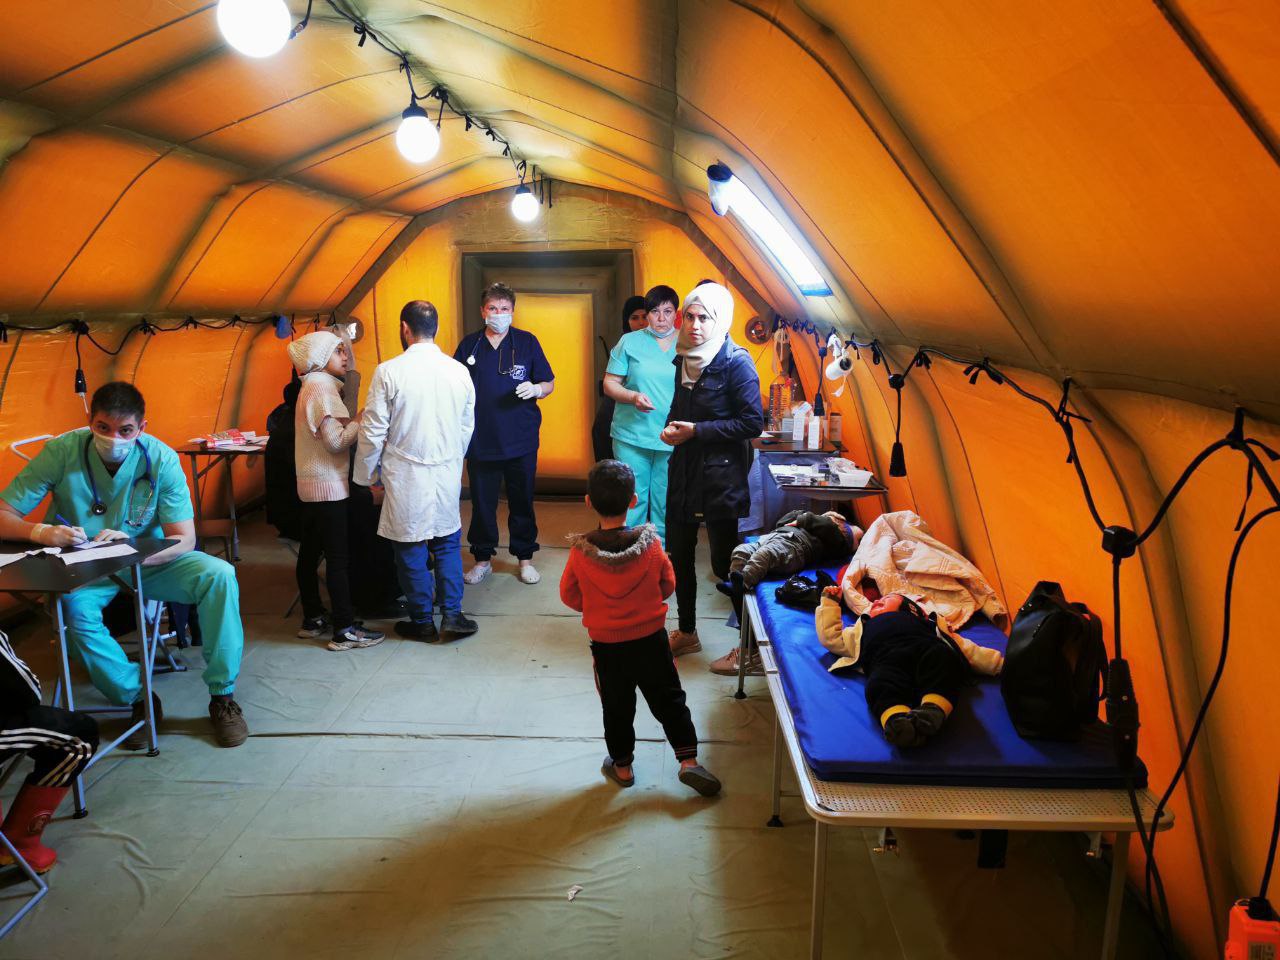 В городе Алеппо в Полевом многопрофильном госпитале Федерального центра медицины катастроф в течение недели ведут прием врачи более десяти специальностей из России.  За медпомощью обращаются и взрослые, и дети, которые после землетрясения длительное время жили и продолжают жить на улице. У более чем 500 осмотренных детей чаще всего диагностируют респираторные инфекции с осложнениями в виде бронхитов, пневмоний и отитов. У взрослых, число которых составляет почти 1000 человек, наряду с ОРЗ, часто встречаются обострения хронических заболеваний сердечно-сосудистой системы. 